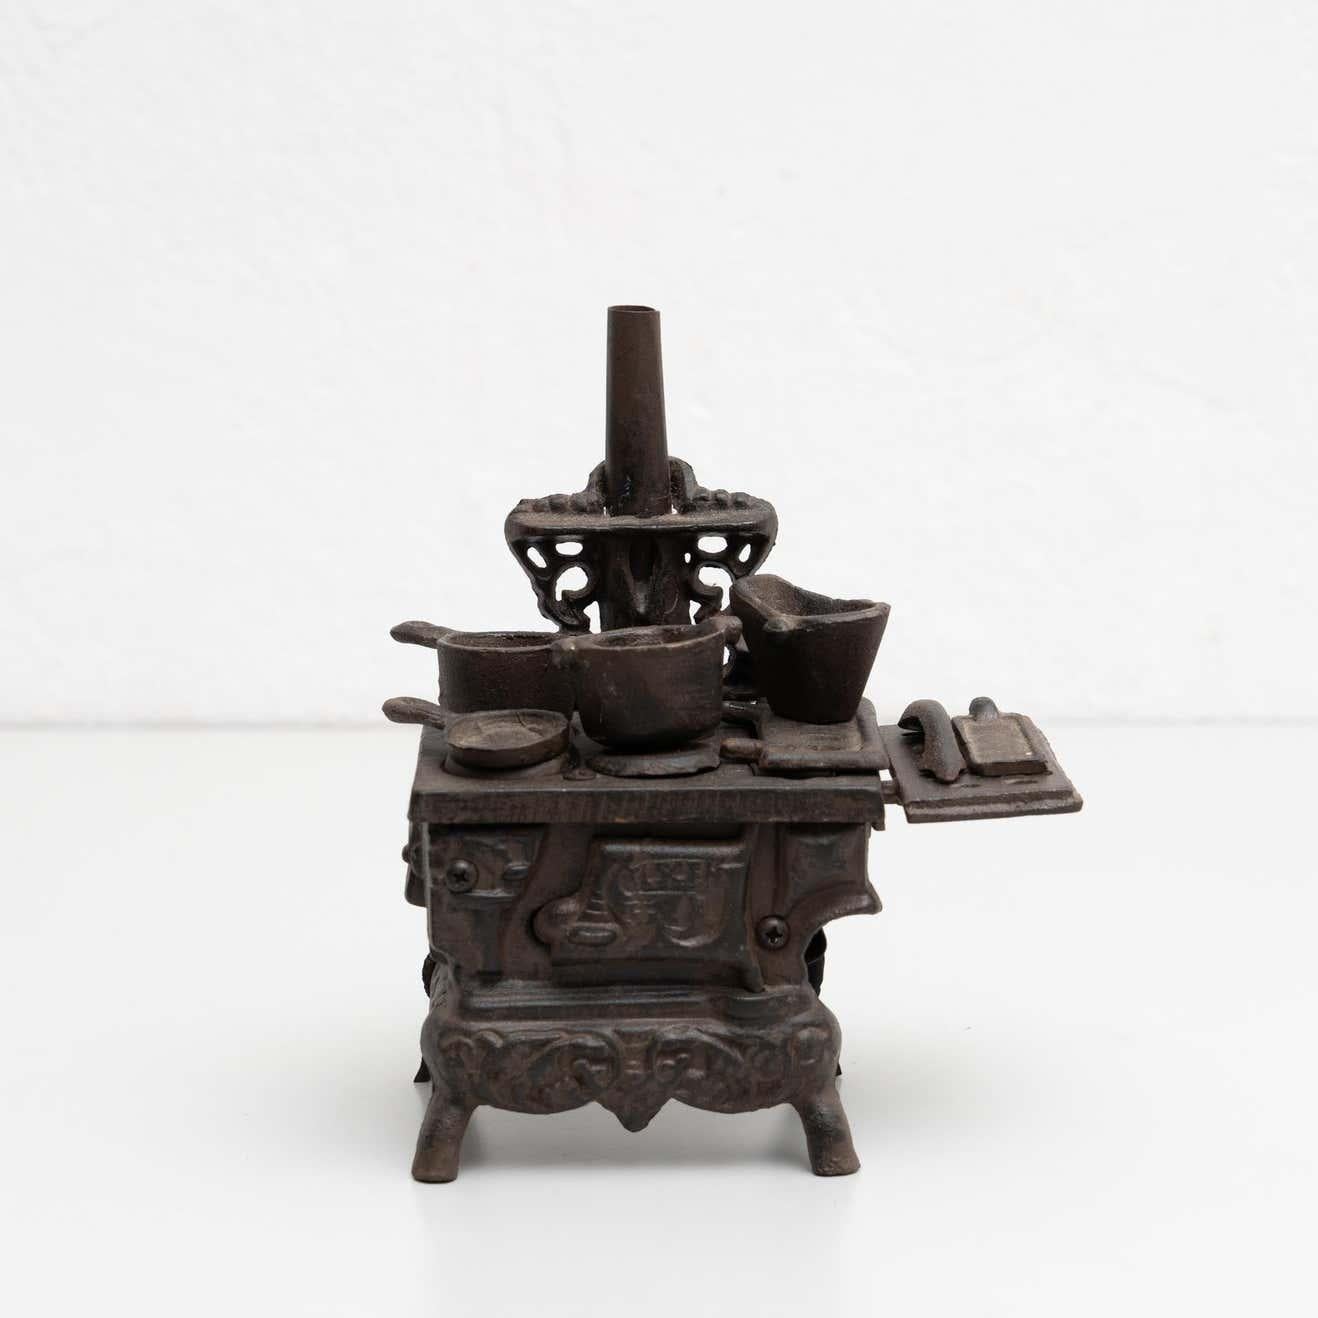 Vintage Eisen Spielzeug Küche Figur eines traditionellen antiken Küche Darstellung.

Hergestellt von einem unbekannten Hersteller in Spanien, um 1930.

Originaler Zustand, alters- und gebrauchsbedingte Abnutzung, schöne Patina